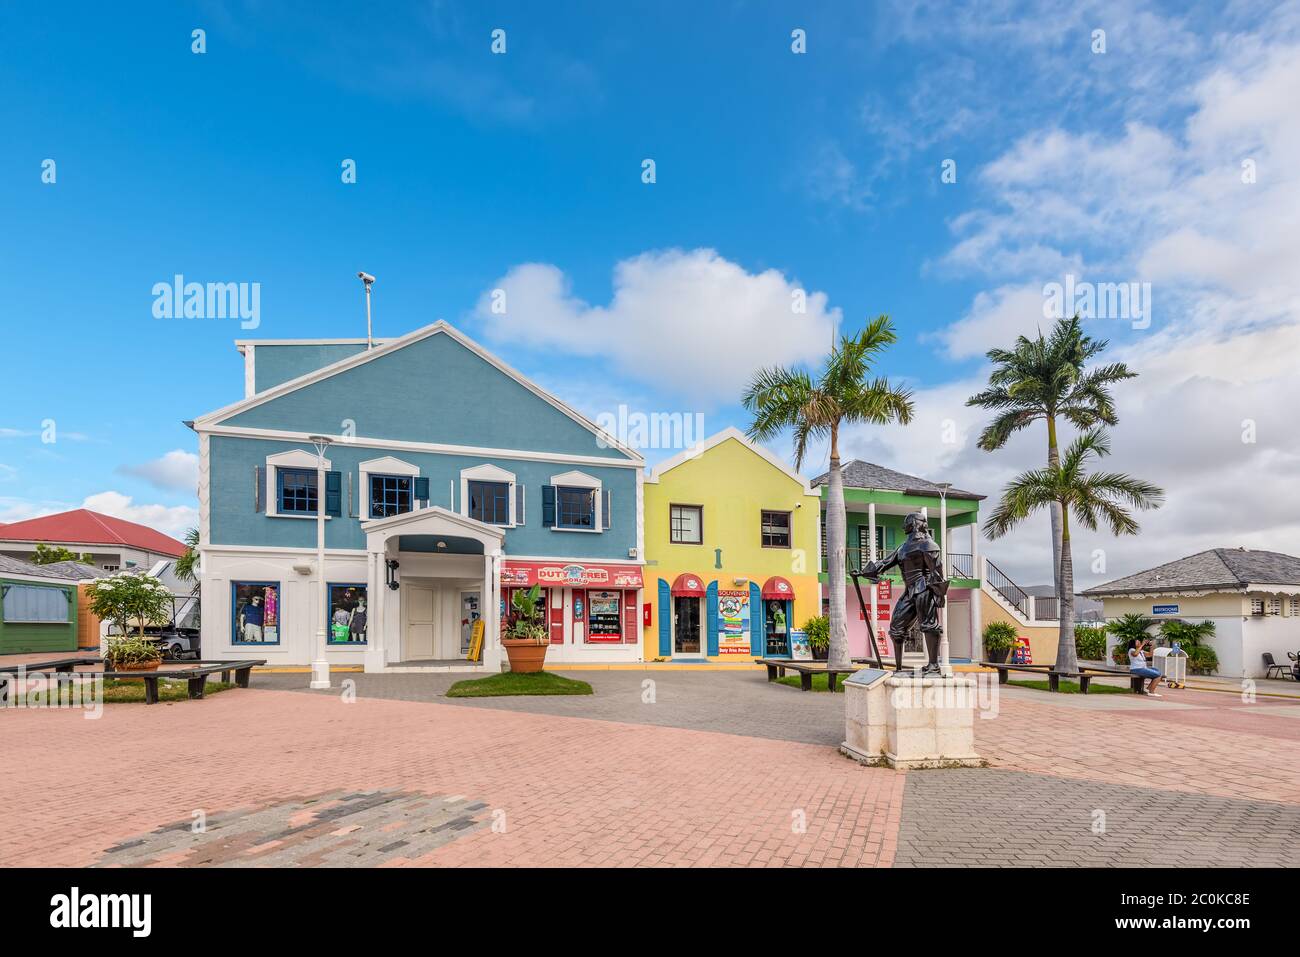 Point Blanche, St. Maarten - 1. Mai 2019: Einkaufsviertel im Kreuzfahrthafen von St. Maarten (Niederlande). Denkmal für einen Piraten im Vordergrund. Szeni Stockfoto